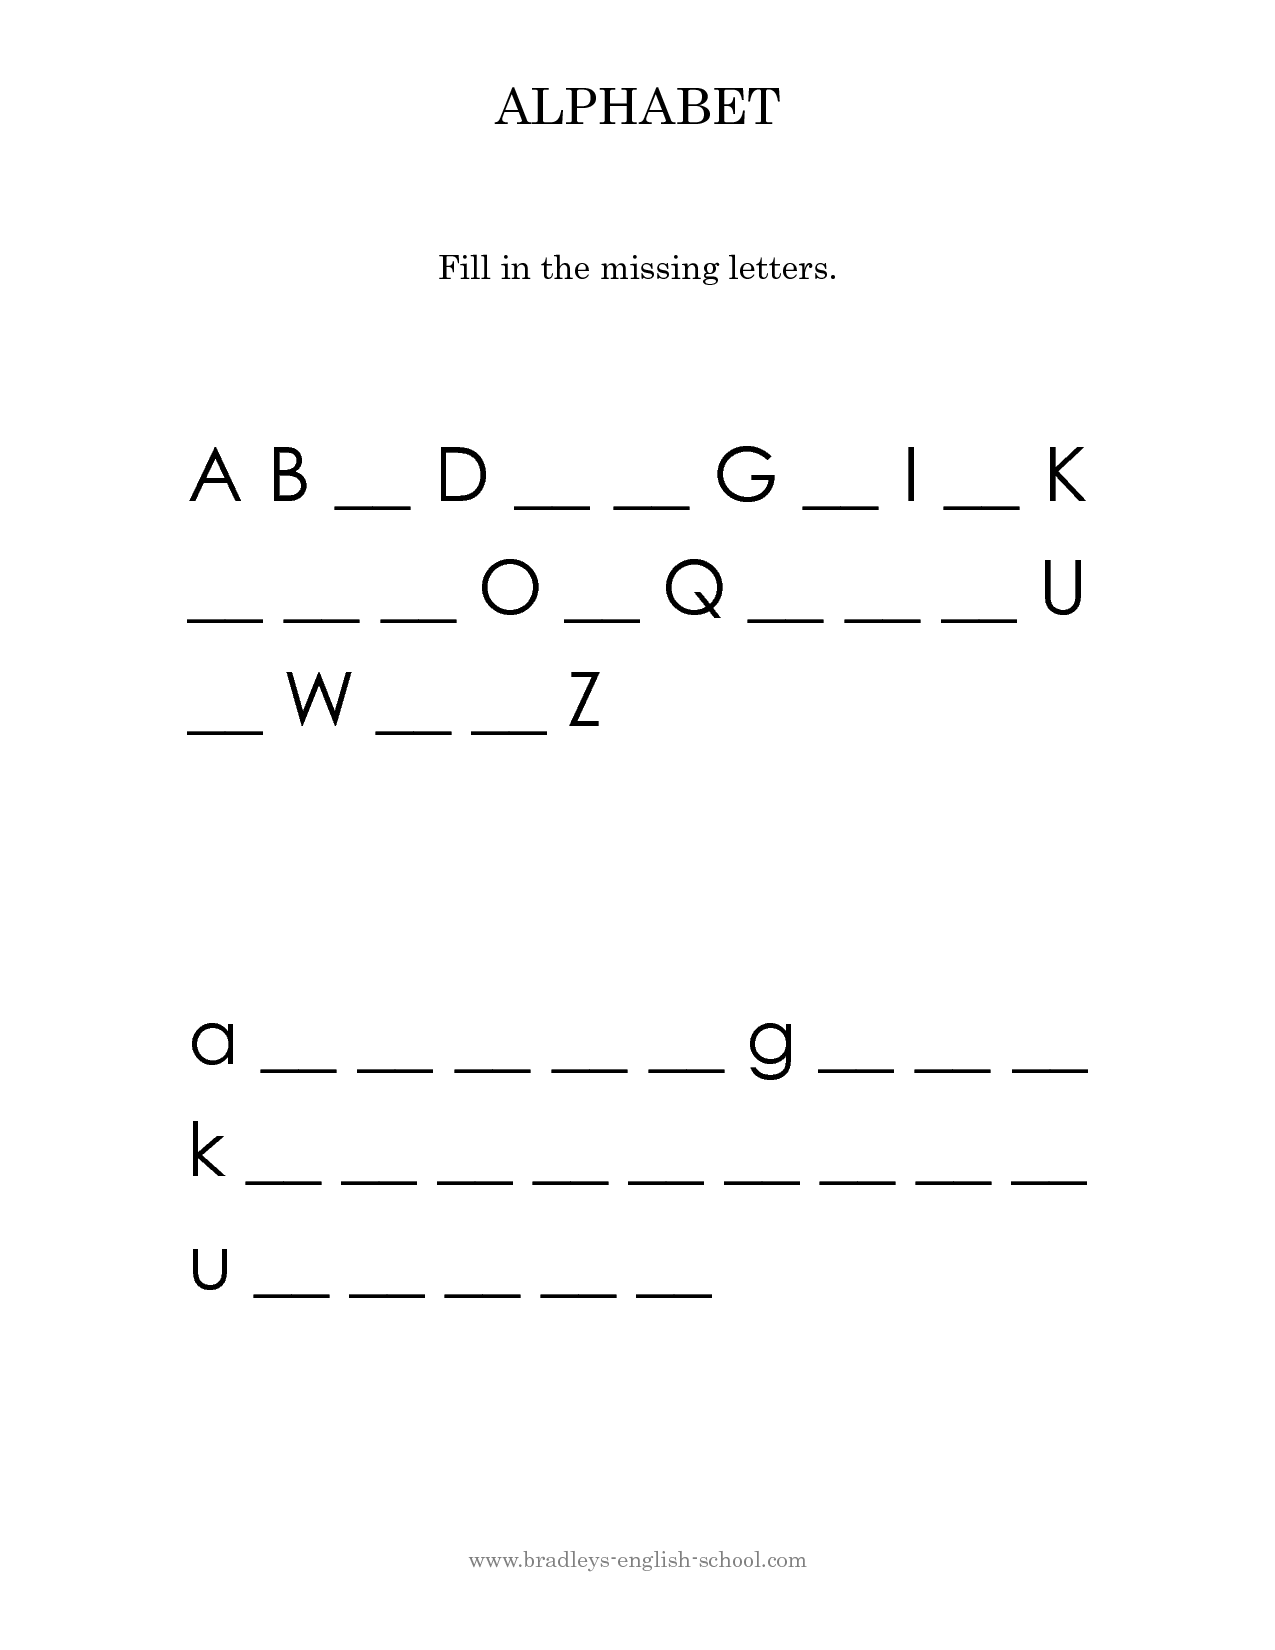 14 Images of Alphabet Letter Worksheets